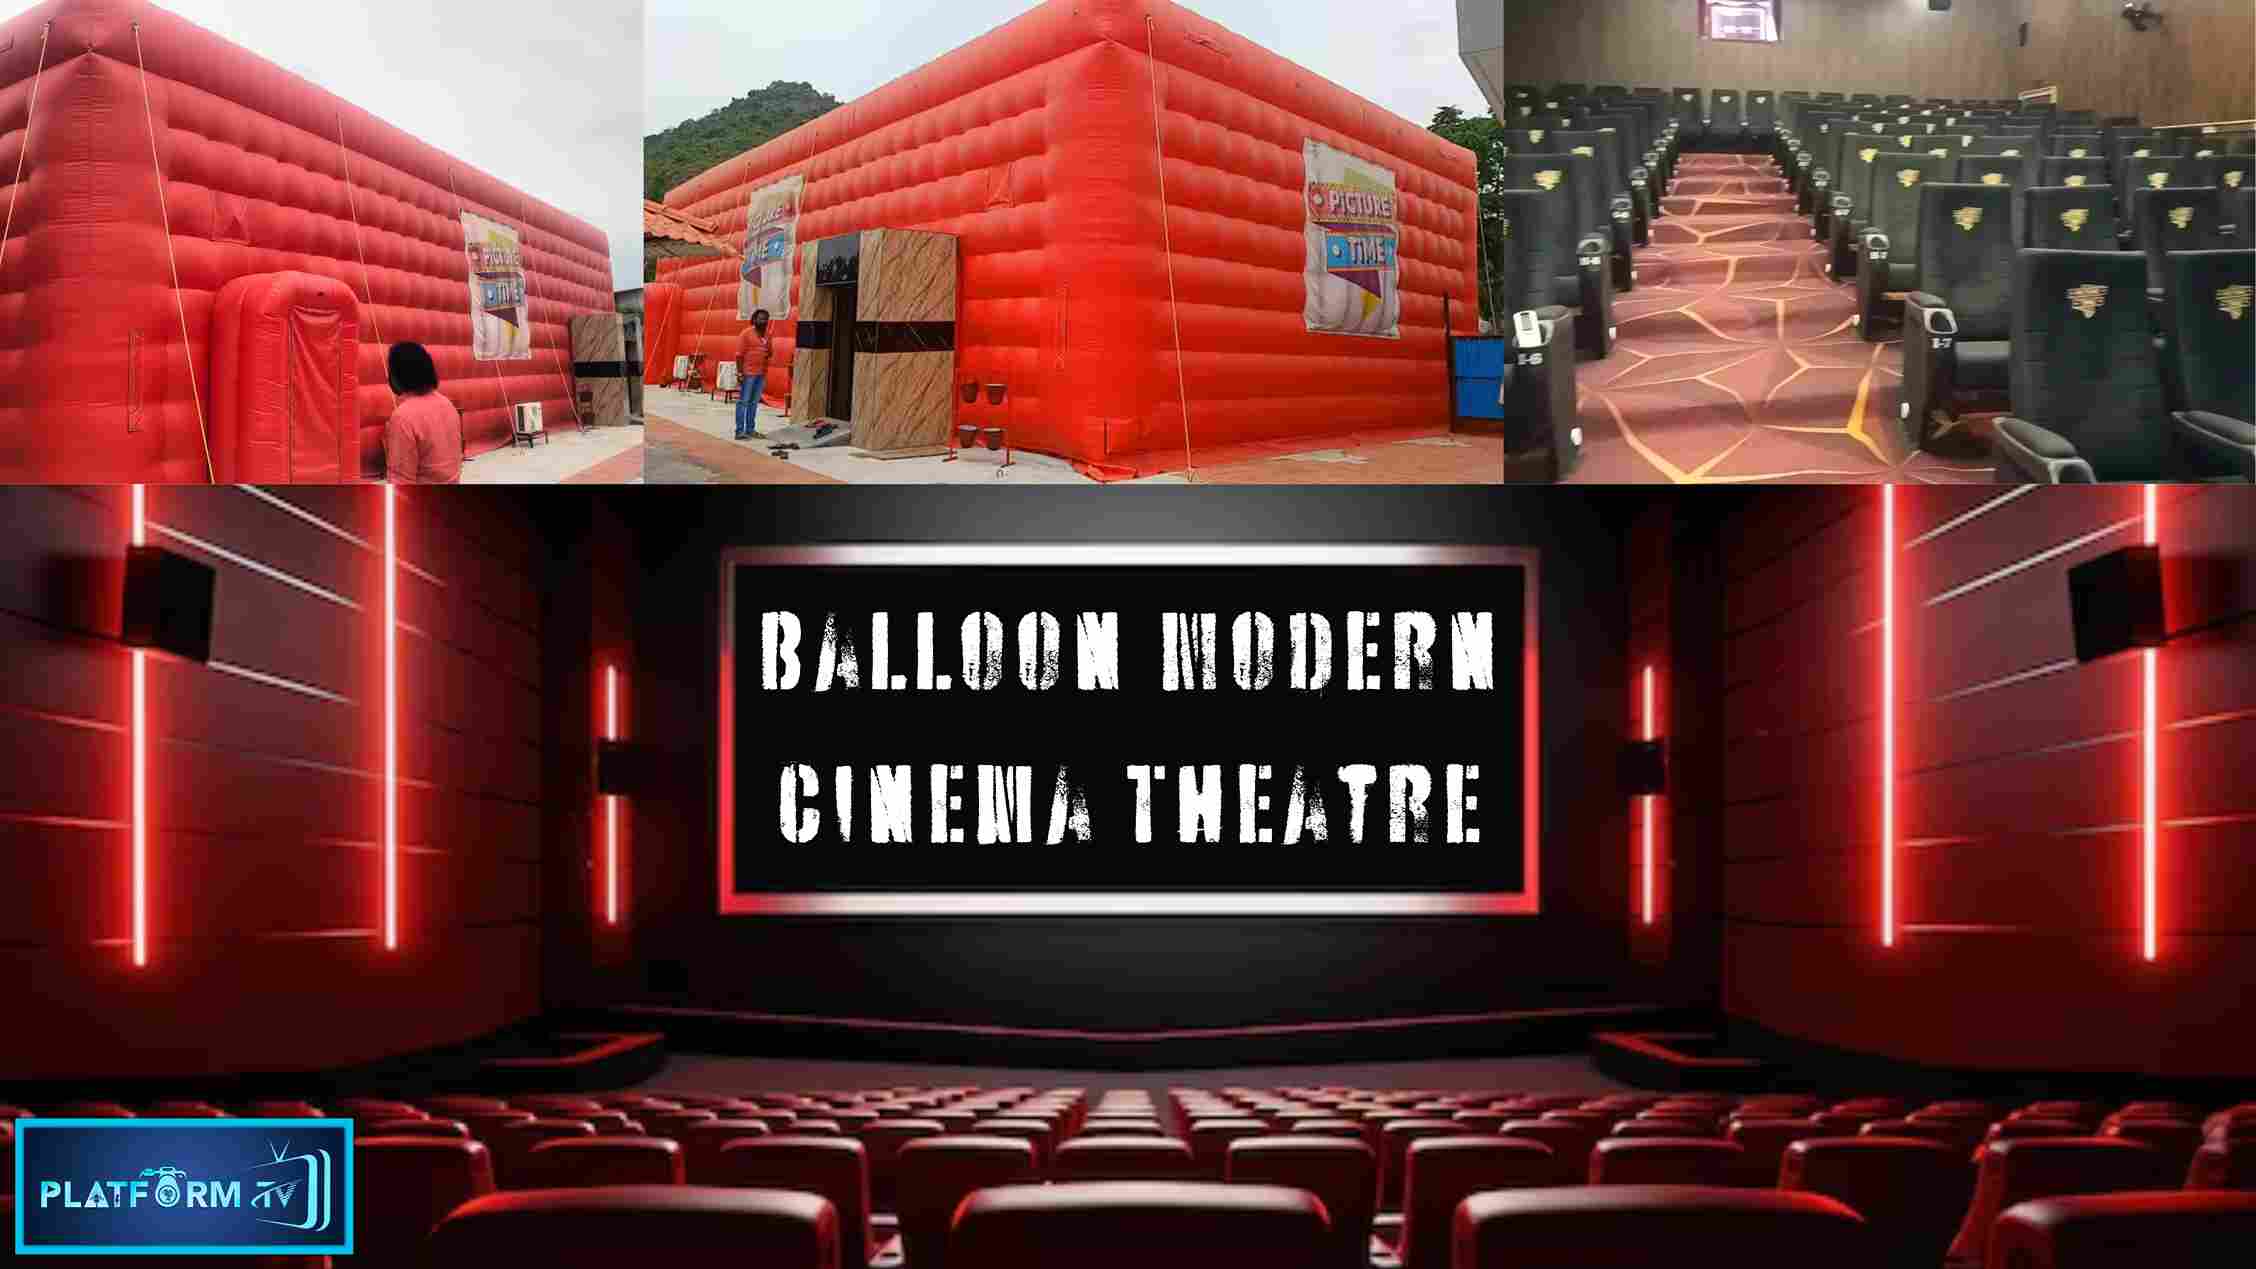 Balloon Modern Cinema Theatre - Platform Tamil